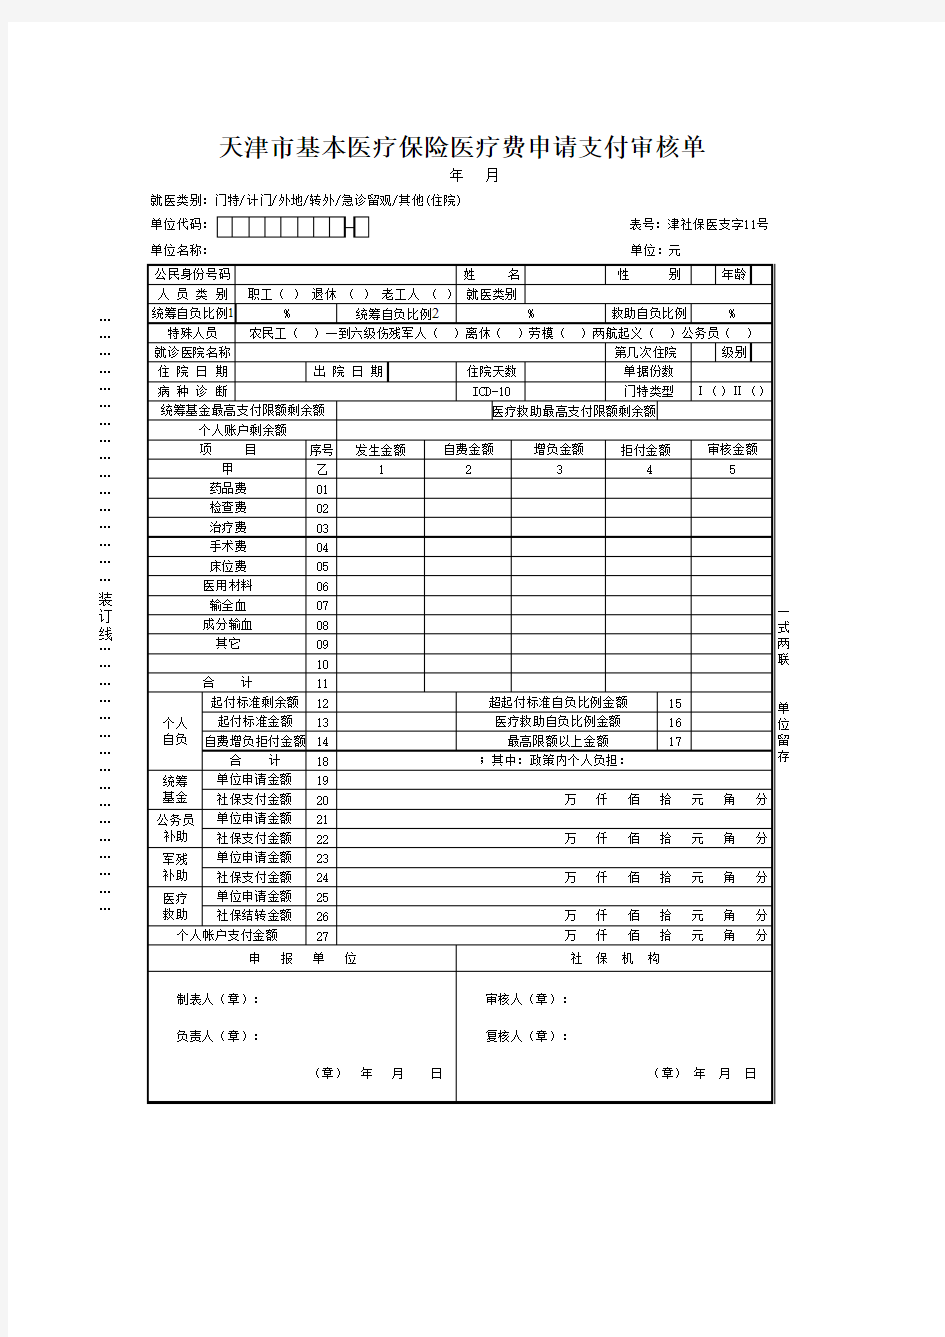 天津市基本医疗保险医疗费申请支付审核单(医支字11号)